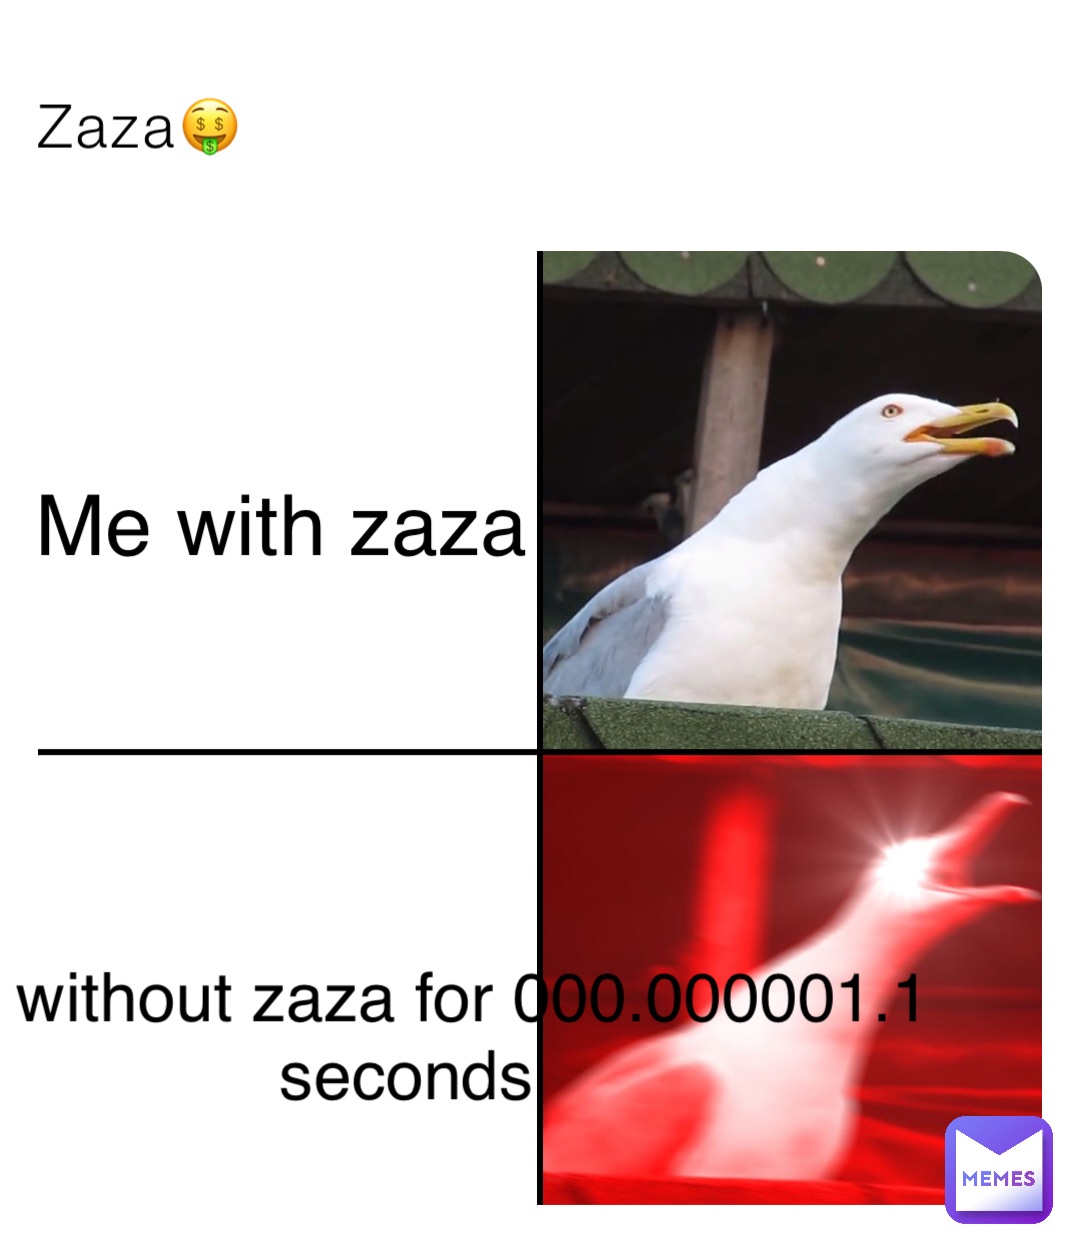 Zaza🤑 Me with zaza We without zaza for 000.000001.1 seconds